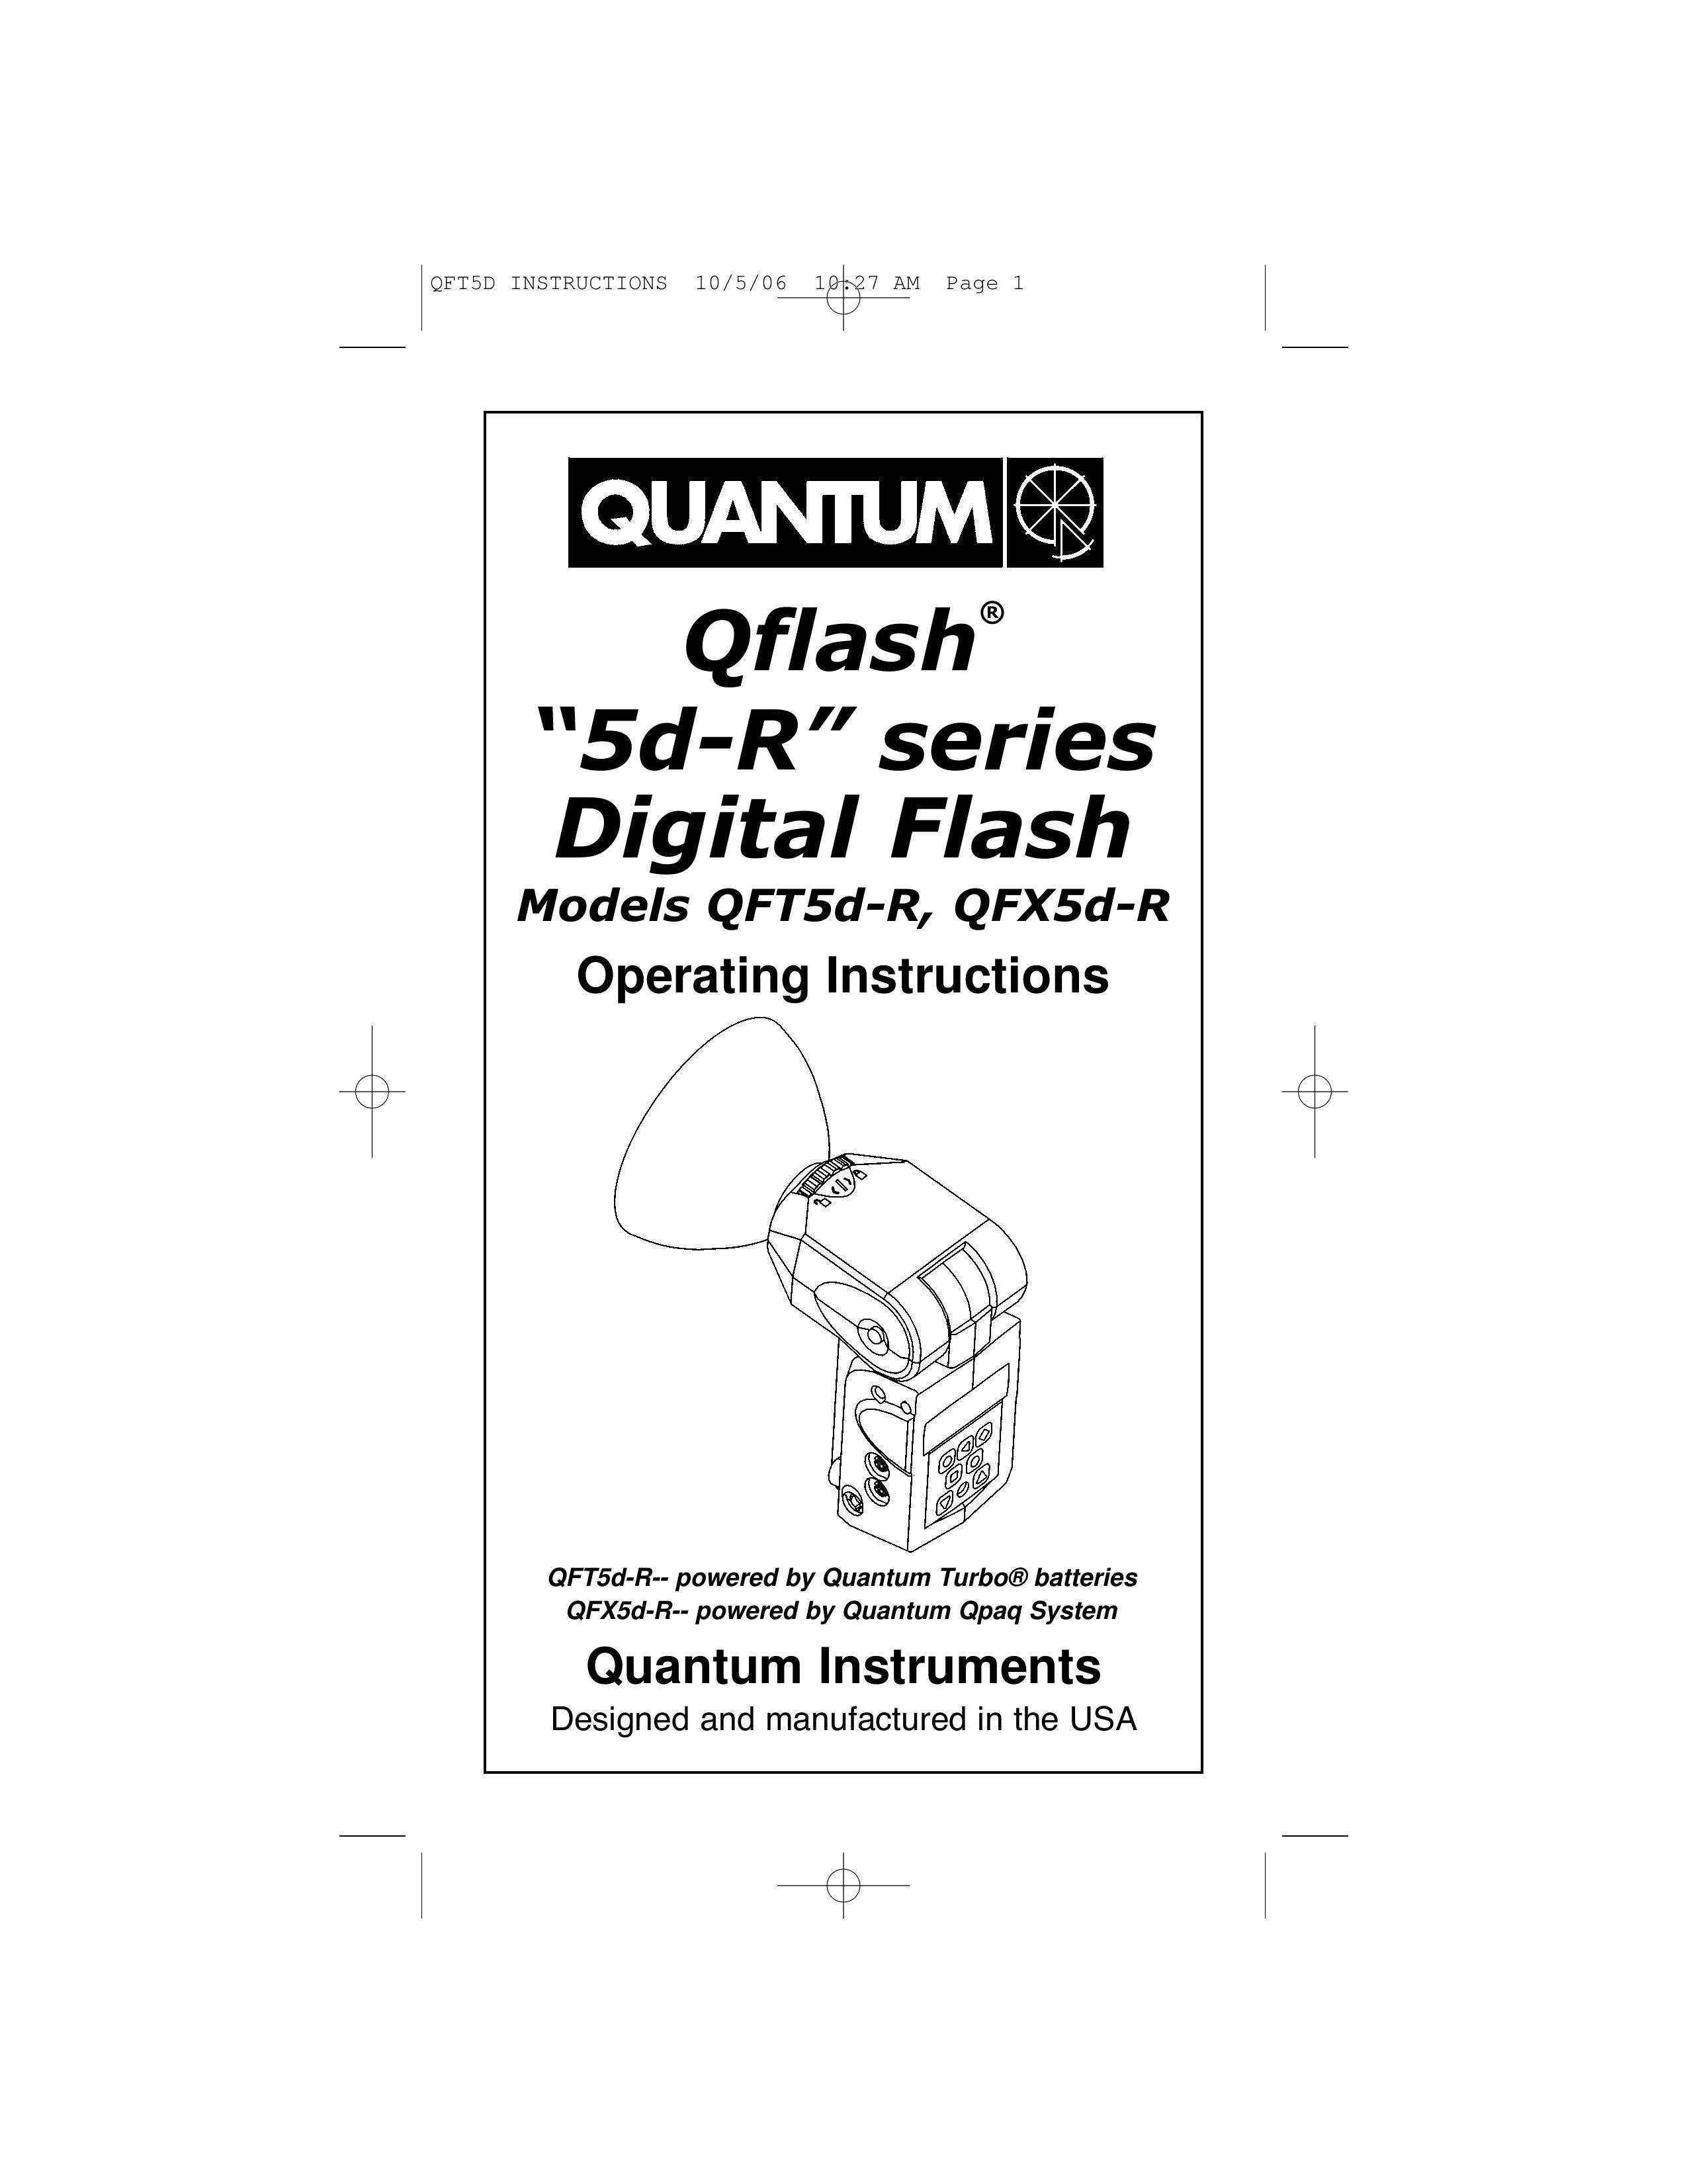 Quantum Instruments QFX5d-R Camera Flash User Manual